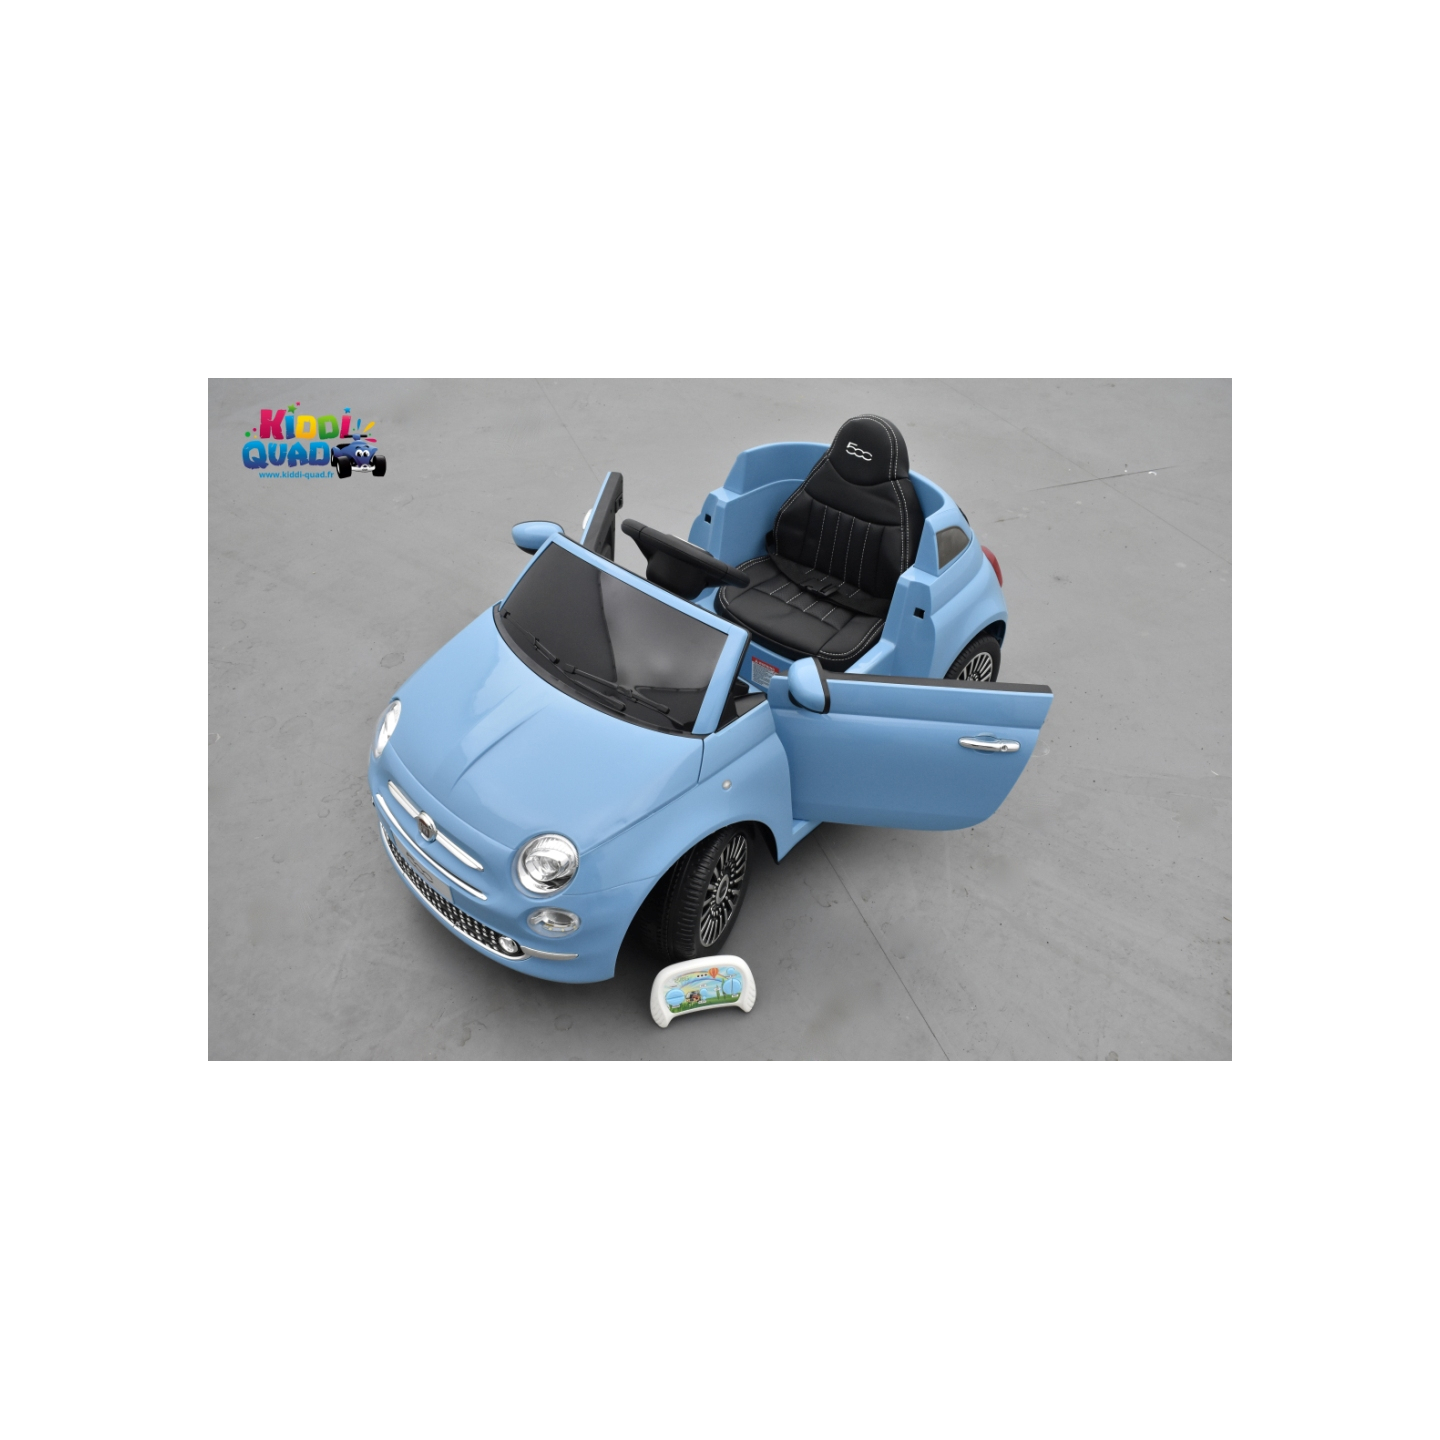 https://kiddi-quad.fr/11956-product_hd/fiat-500-bleu-vehicule-electrique-enfant-telecommande-parentale-24-ghz-12-volts-2-moteurs.jpg